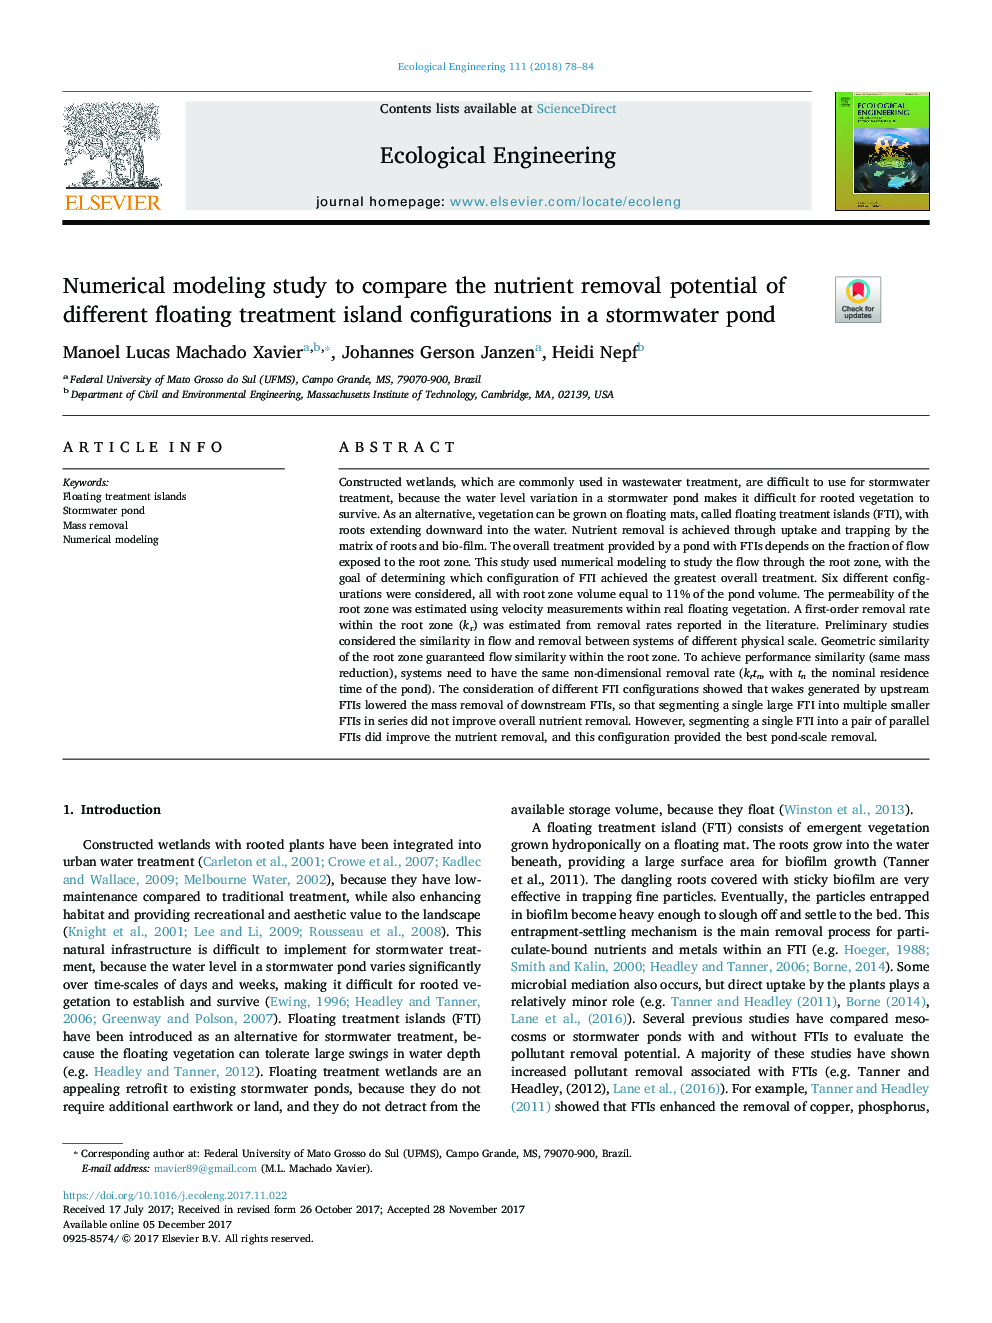 مطالعه مدل سازی عددی برای مقایسه پتانسیل حذف مواد مغذی مختلف از تنظیمات جزر و مد شناور در یک حوضچه آبریز 